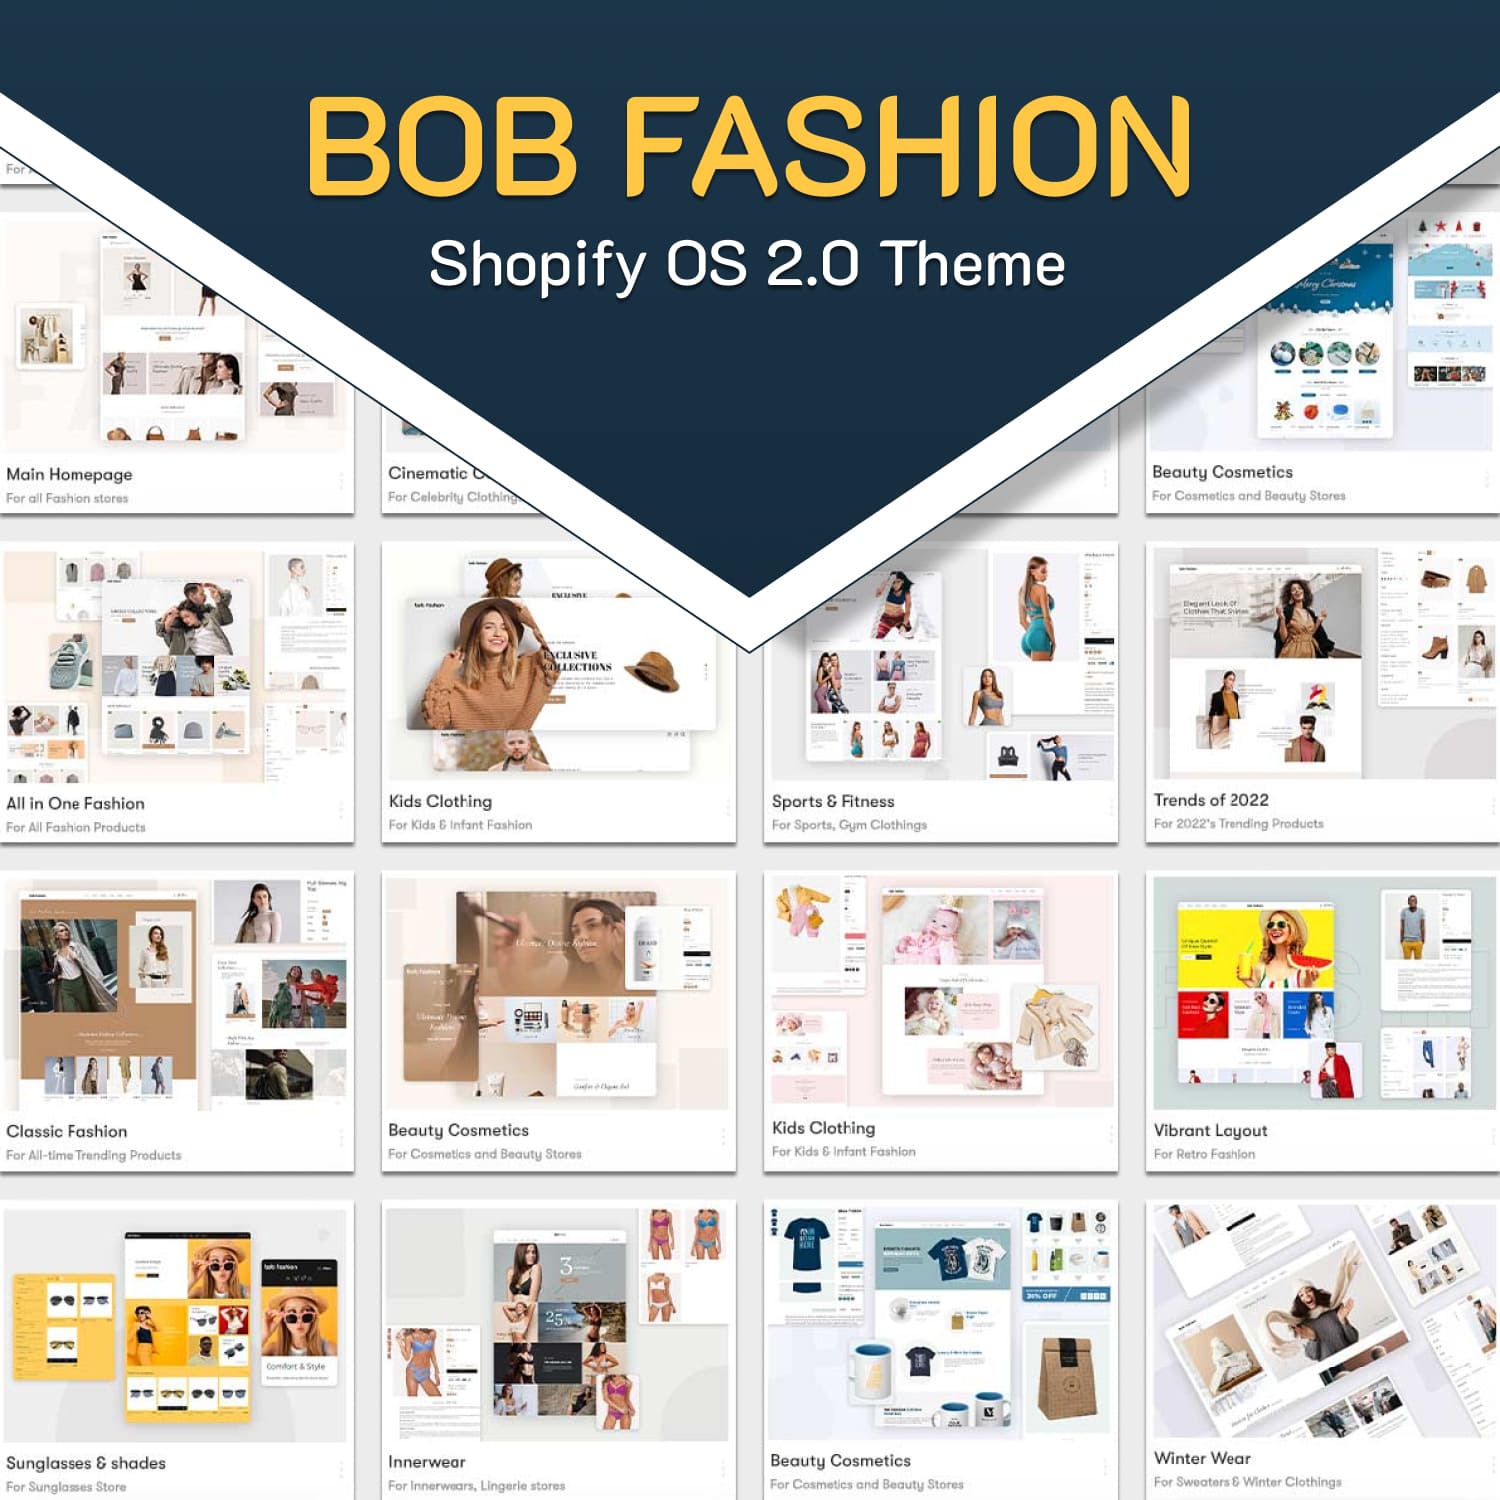 Bob Fashion Shopify OS 2.0 Theme.